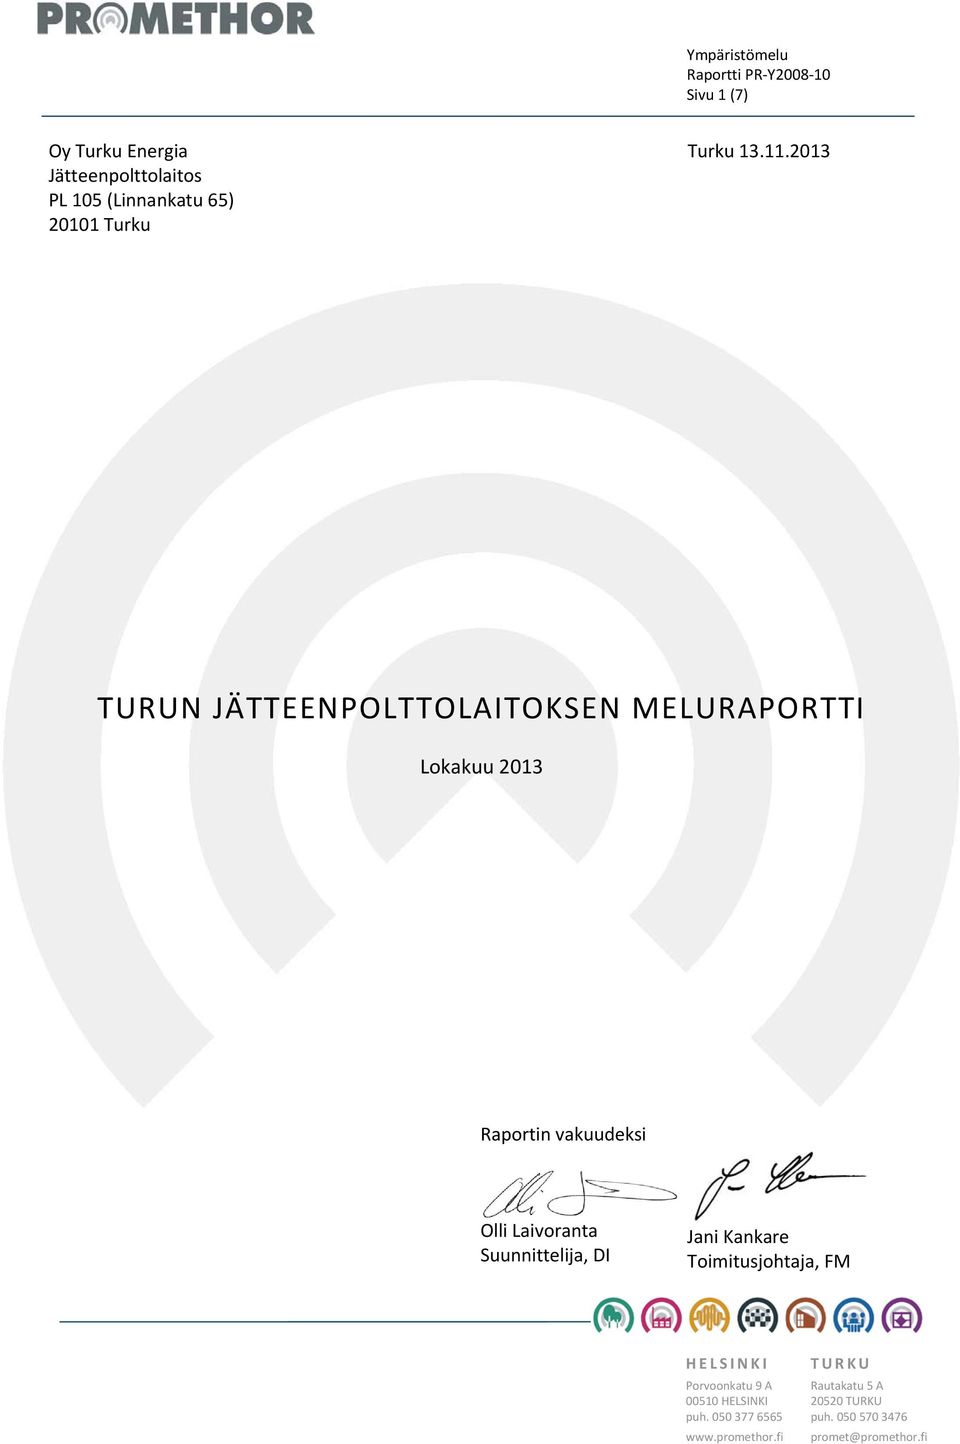 2013 TURUN JÄTTEENPOLTTOLAITOKSEN MELURAPORTTI Raportin vakuudeksi Olli Laivoranta Suunnittelija, DI